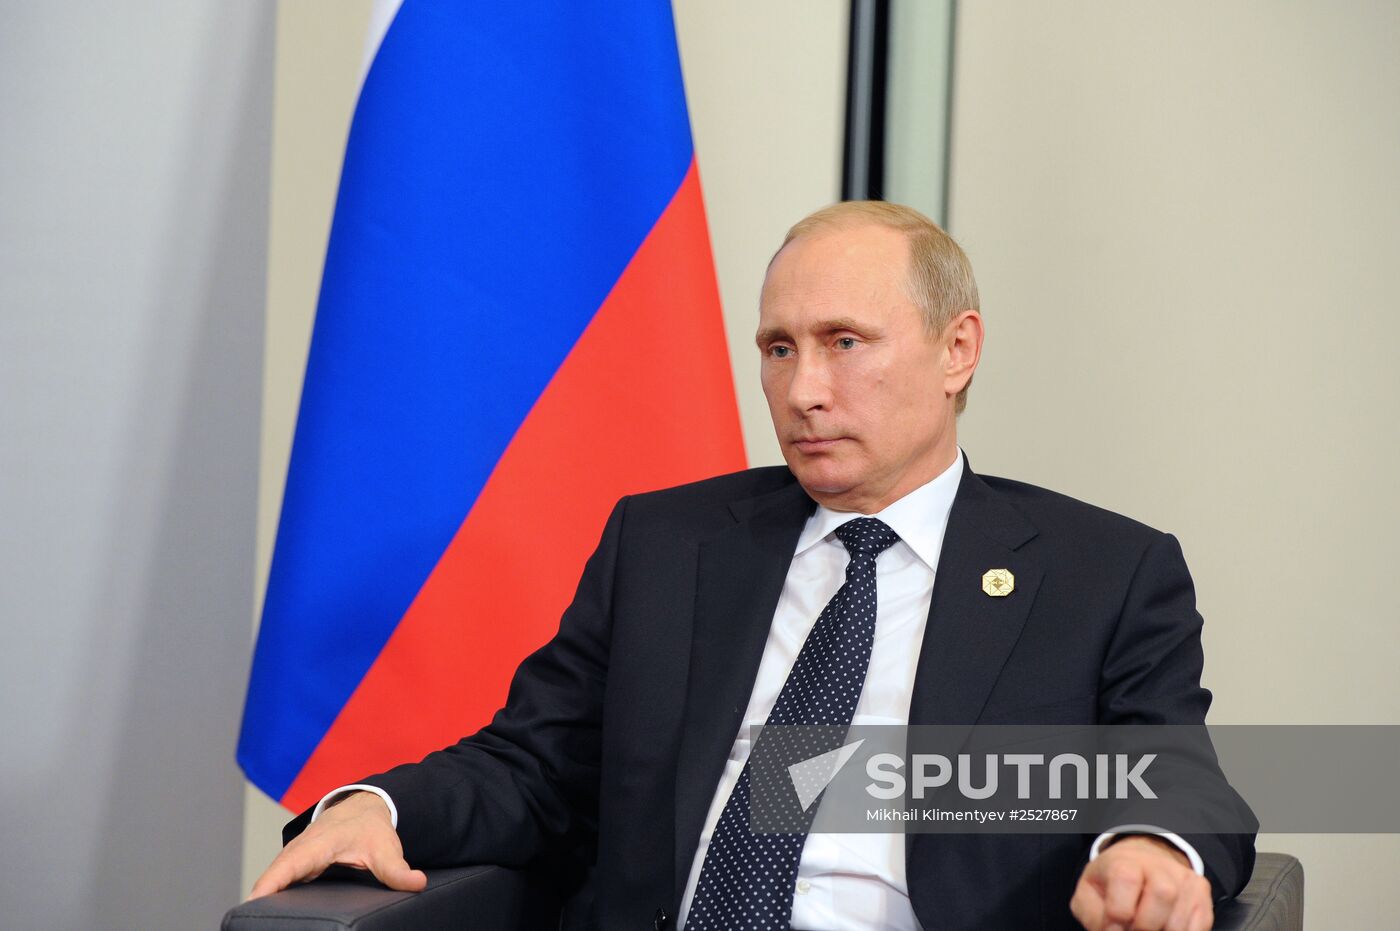 Vladimir Putin takes part in G-20 summit